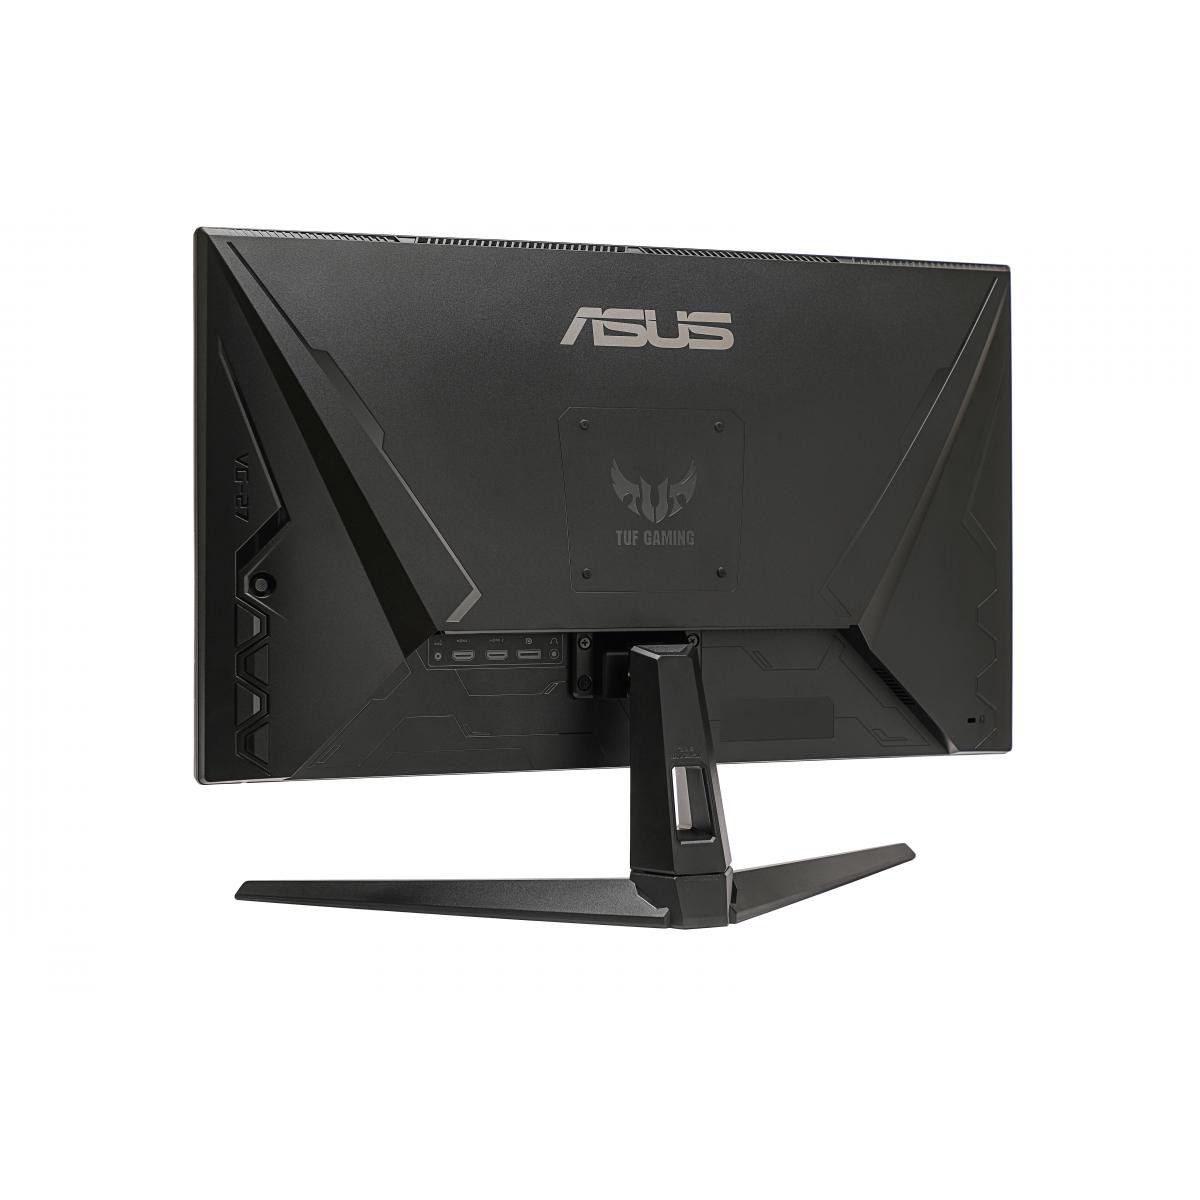 Asus - ASUS MONITEUR 27" VG27AQ1A*Tuf Gaming 1ms HDMI - Moniteur PC